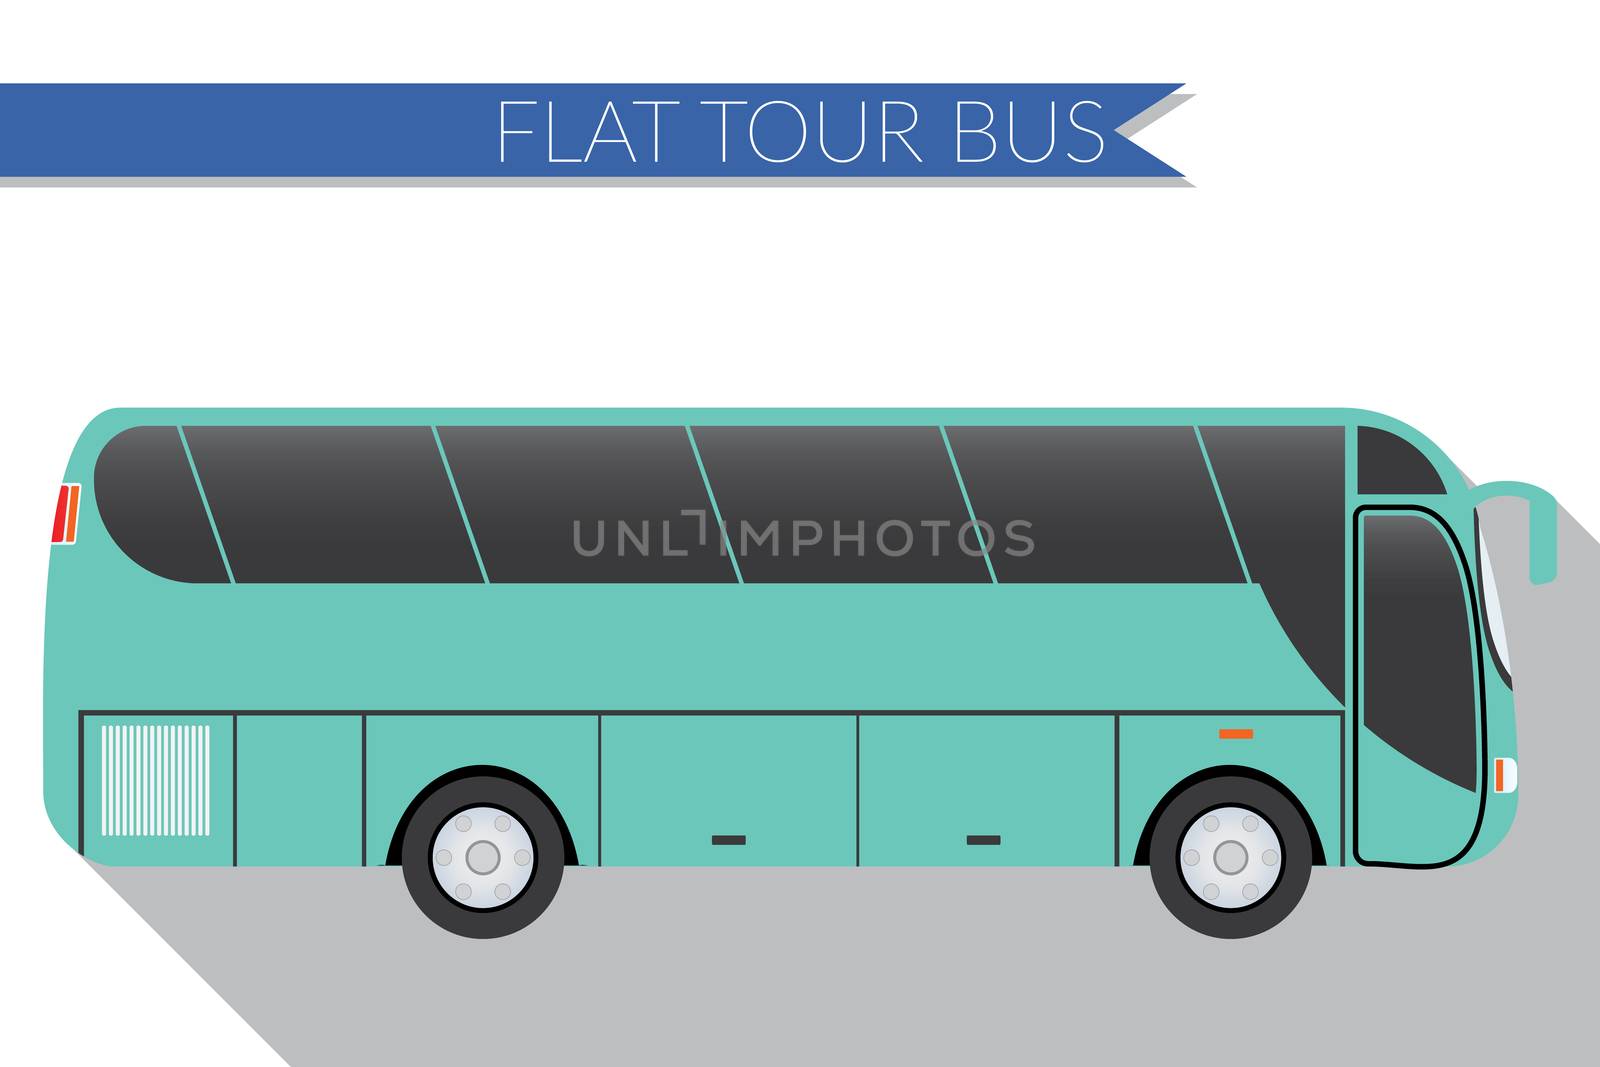 Flat design vector illustration city Transportation, Bus, intercity, long distance tourist coach bus, side view  by Lemon_workshop